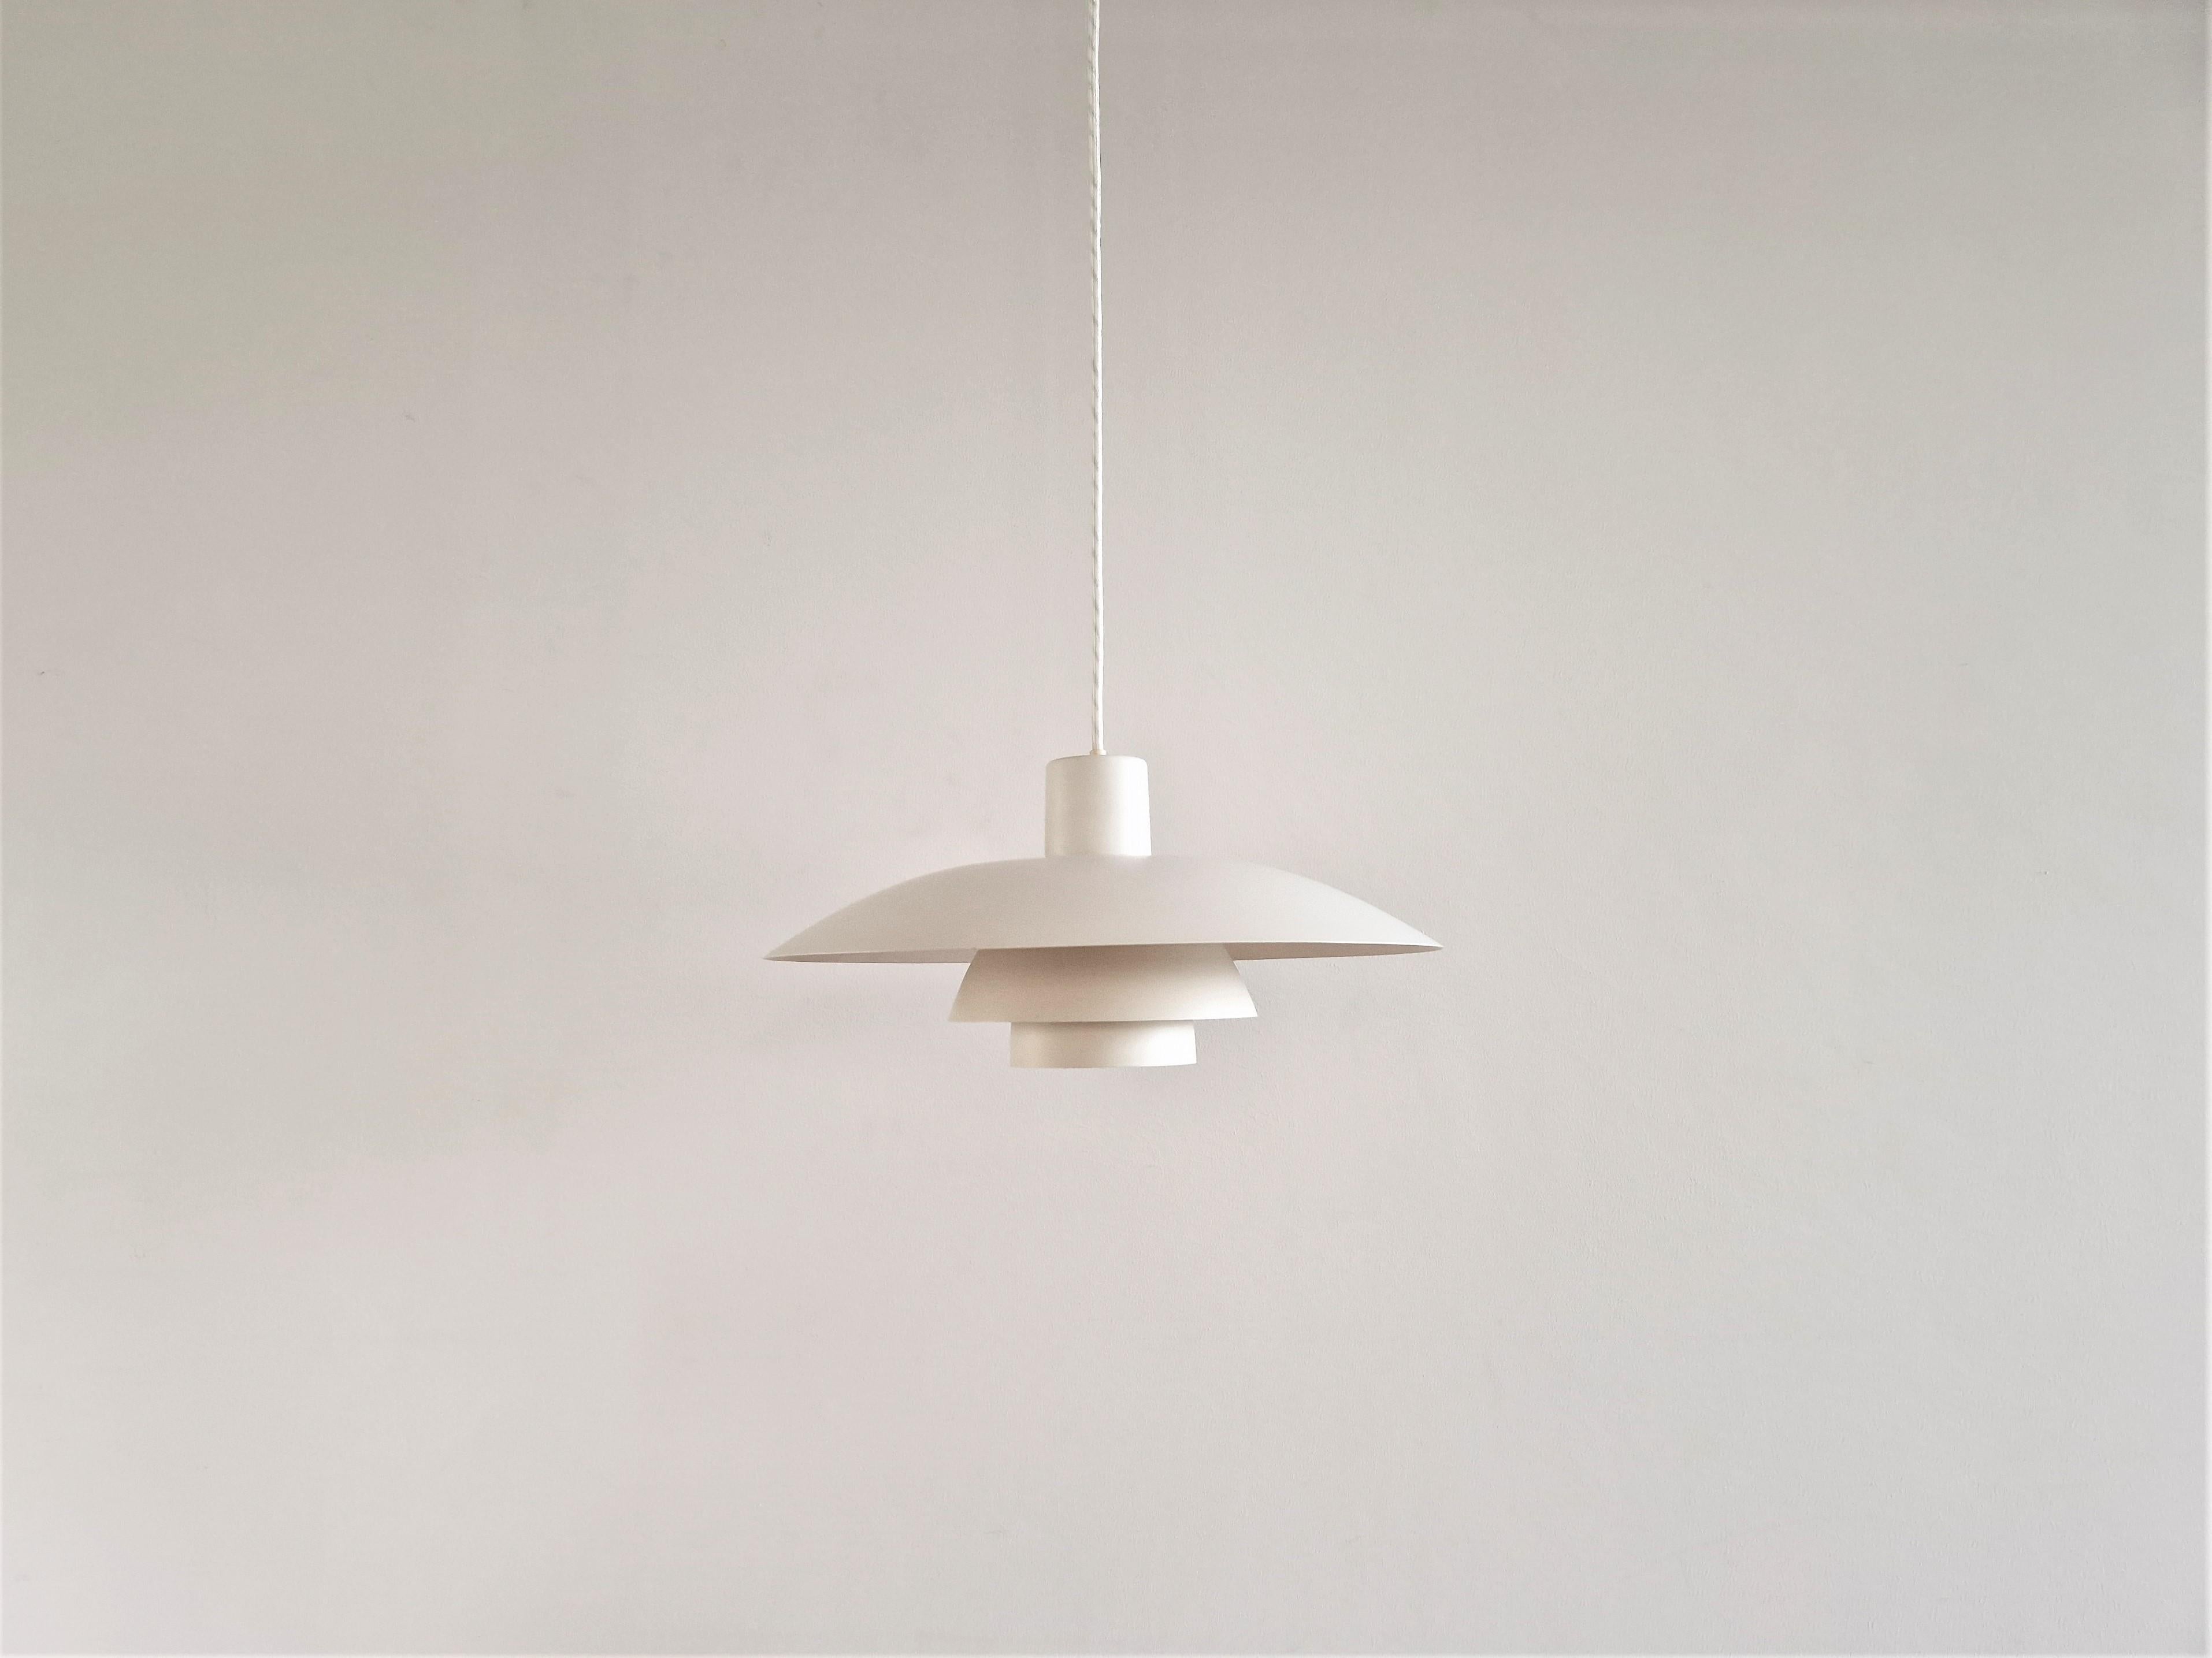 Metal White PH 4/3 Pendant Lamp by Poul Henningsen for Louis Poulsen, Denmark 1960's